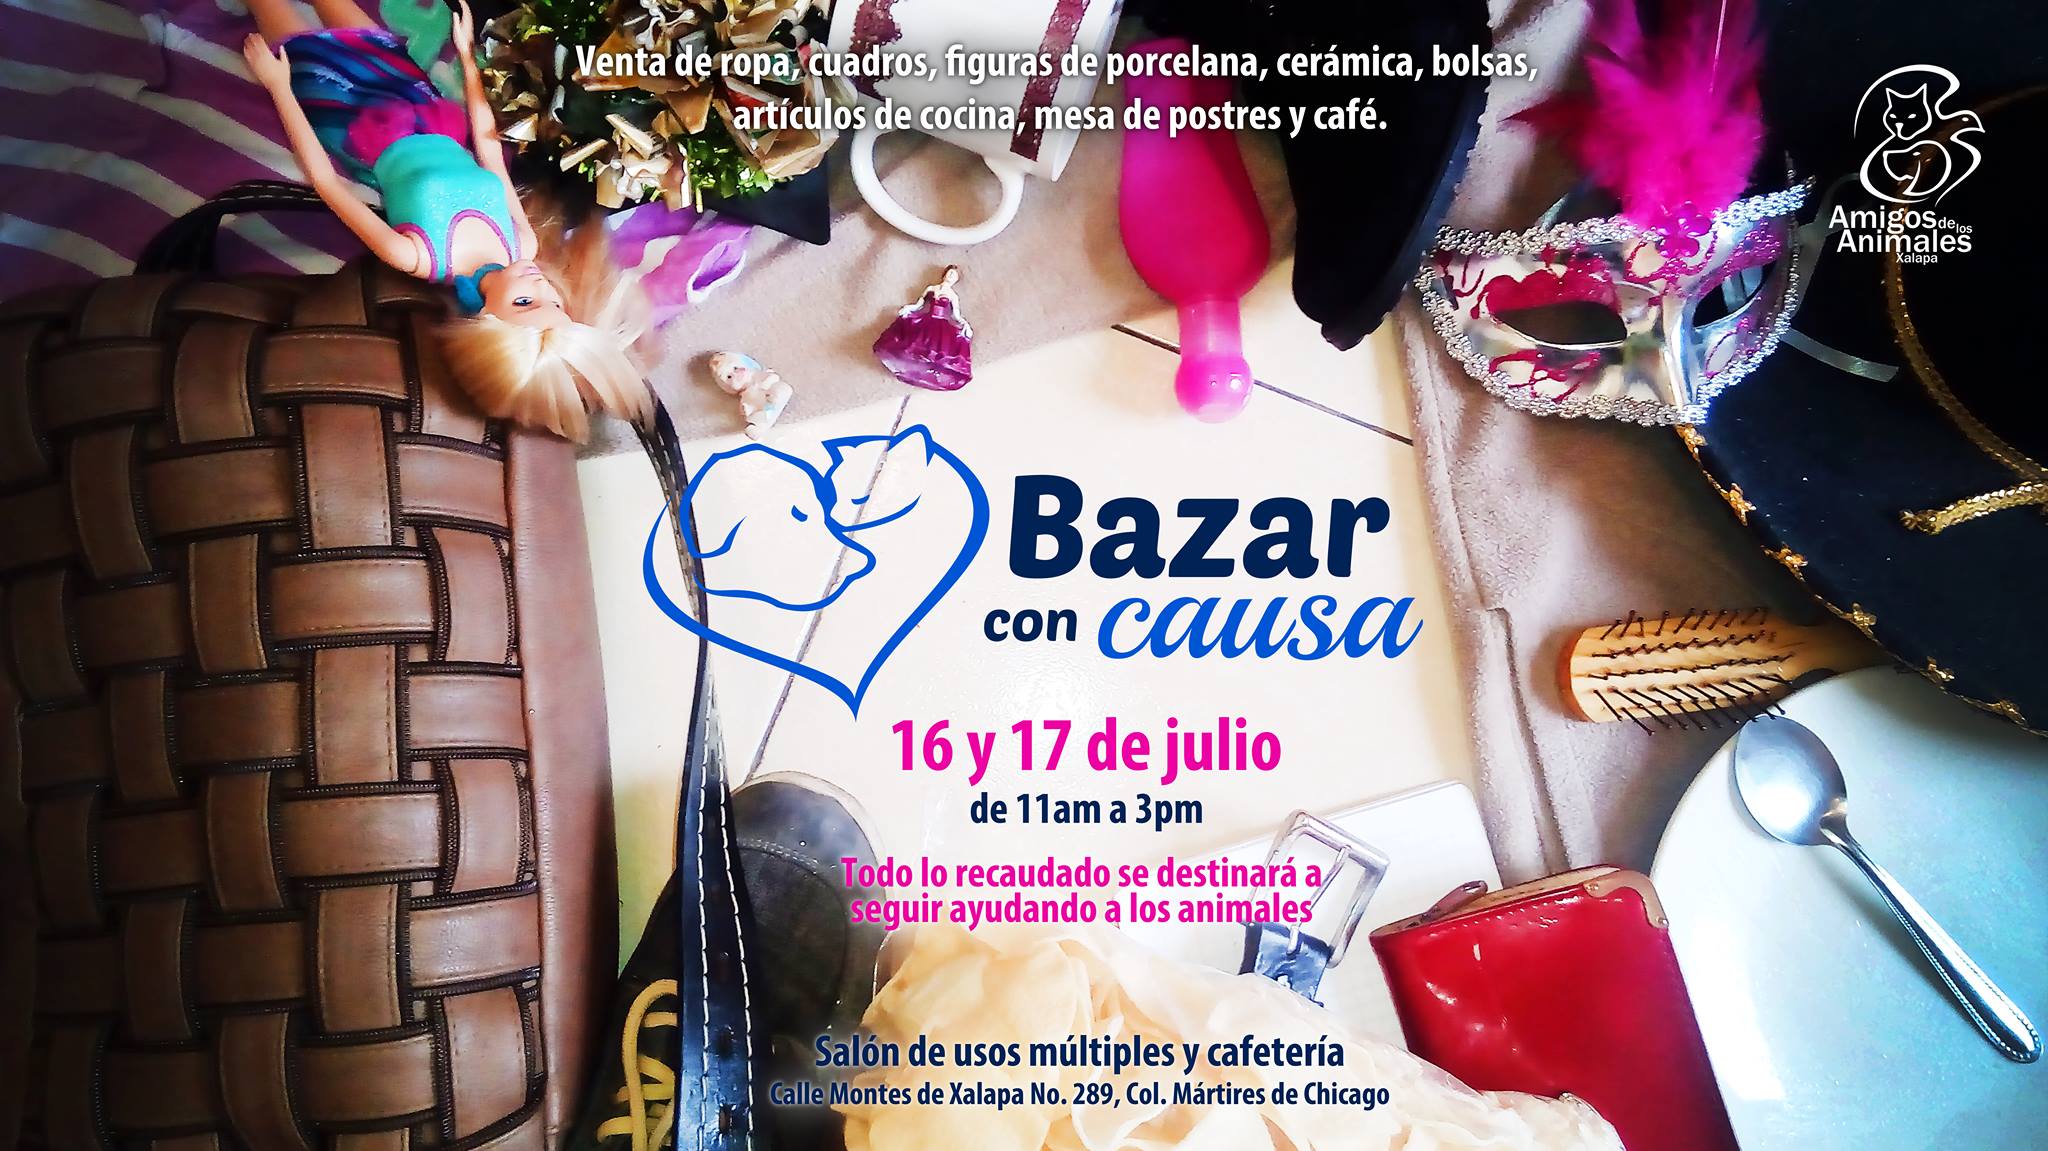 Amigos de los Animales invita a su “Bazar con causa”